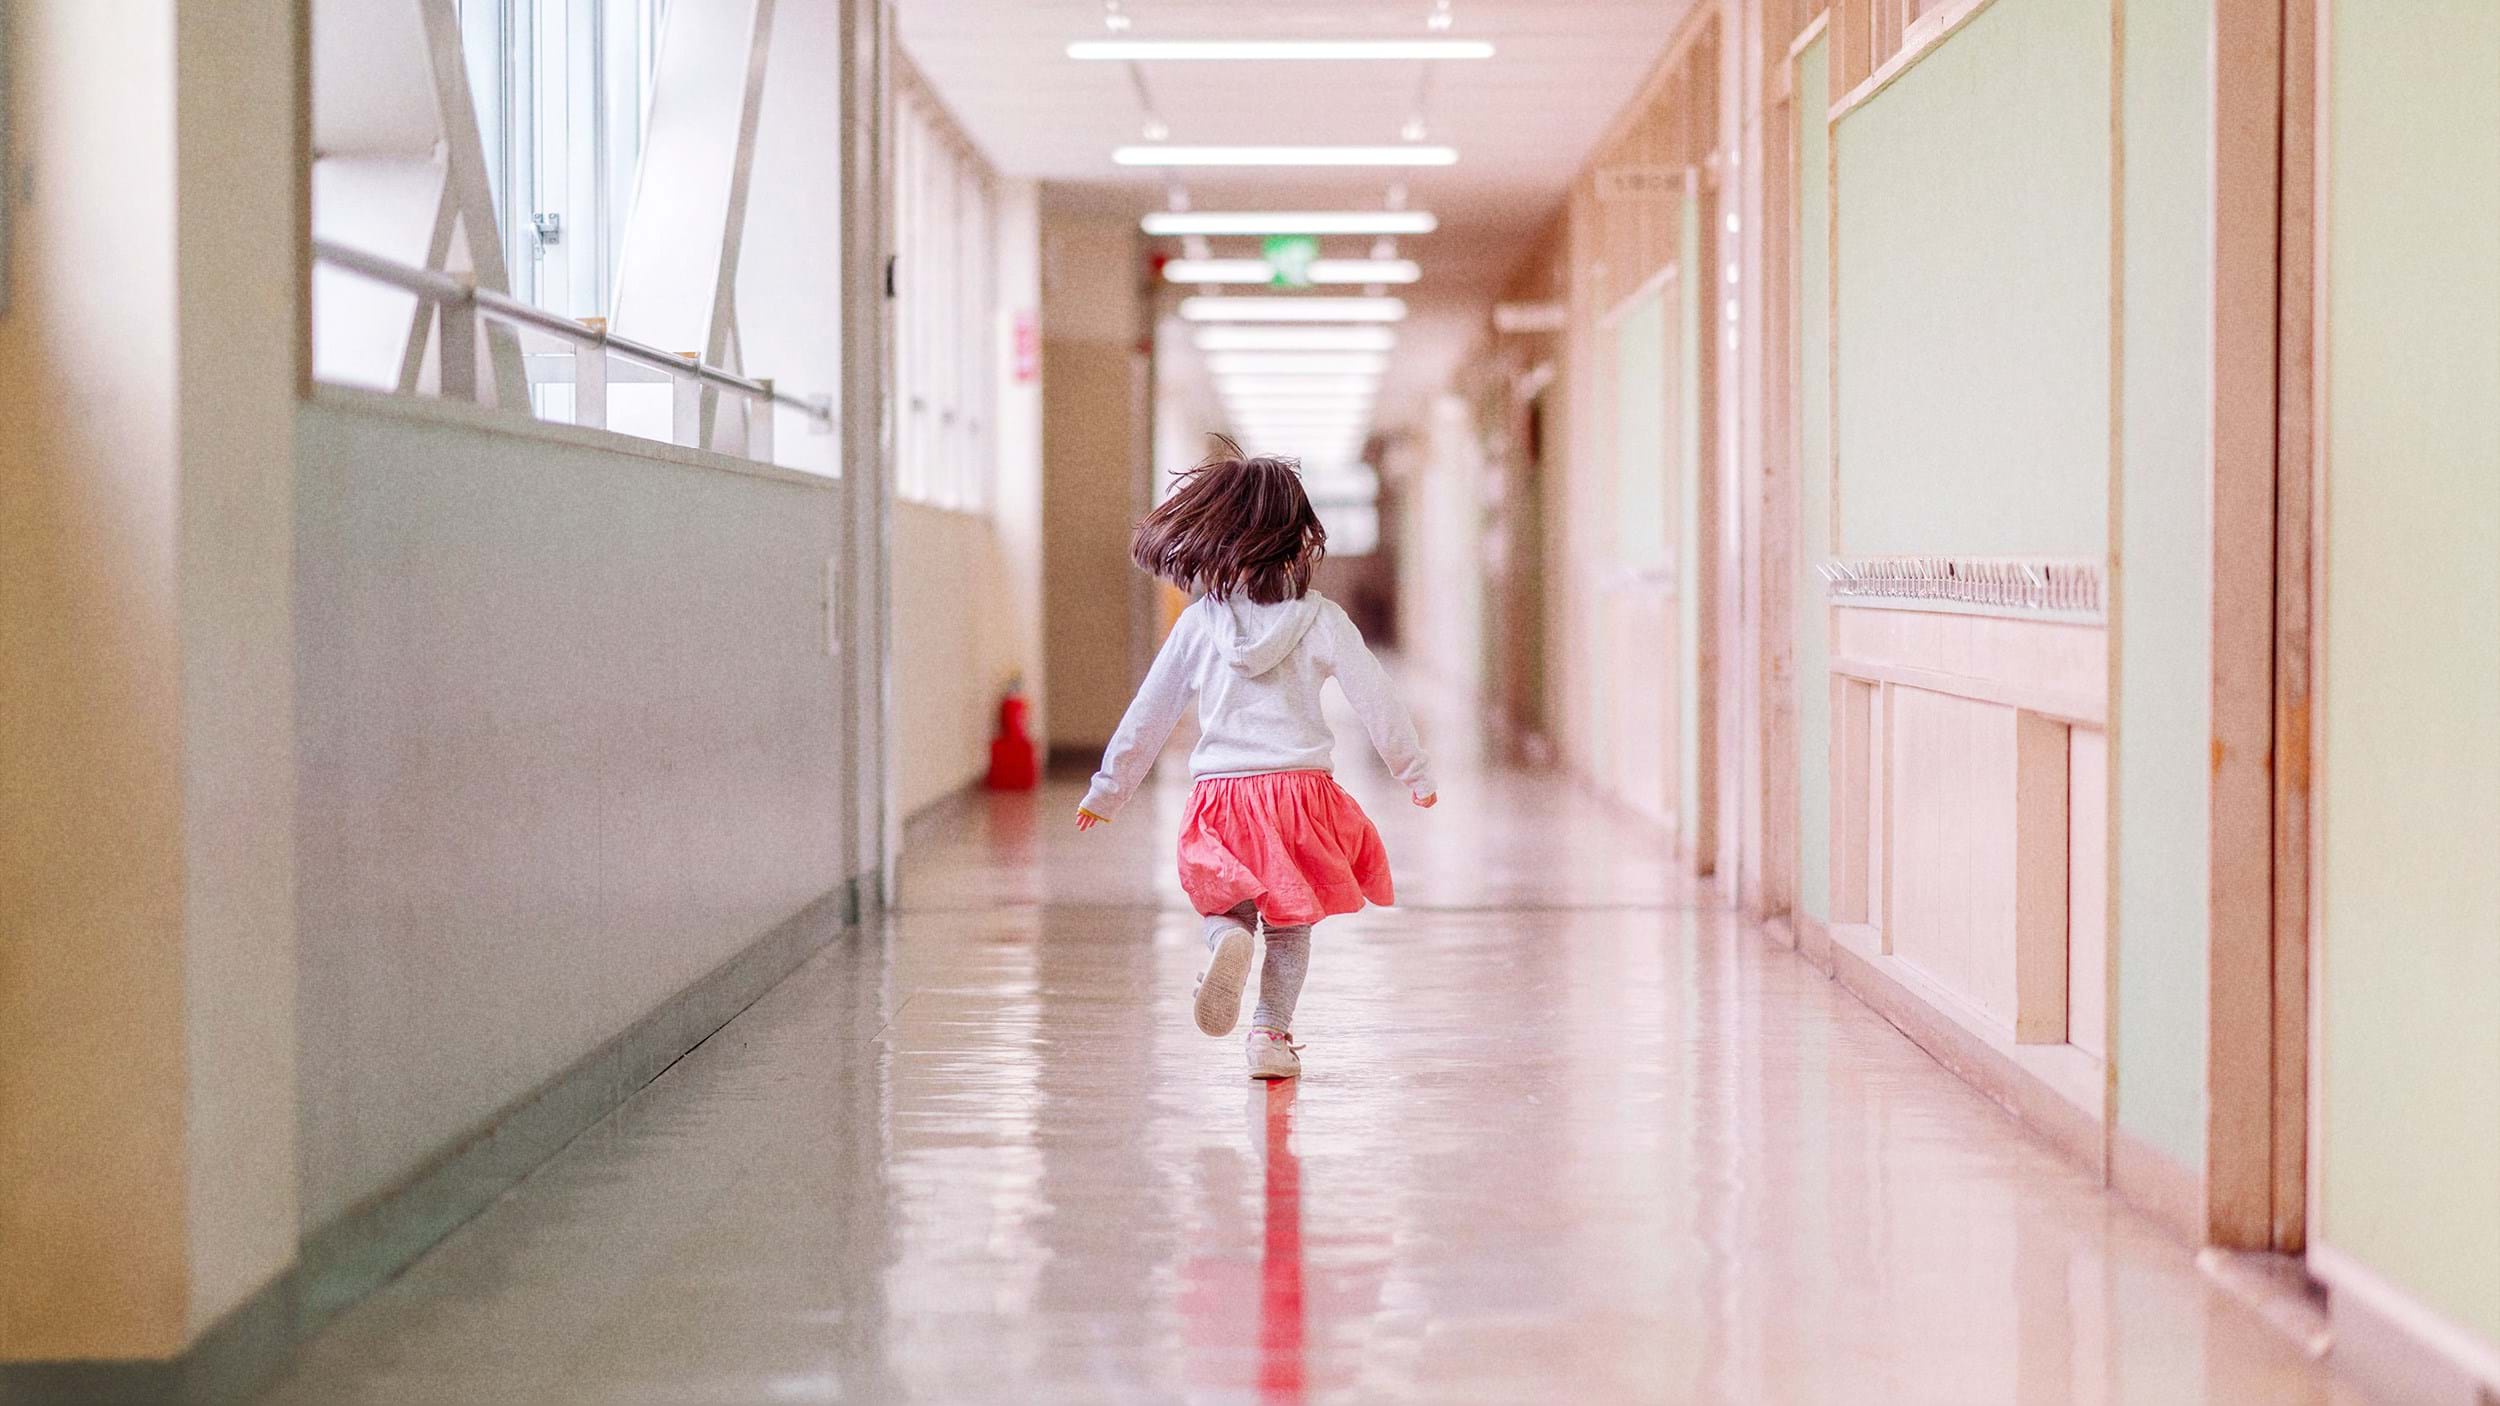 Girl running in school corridor